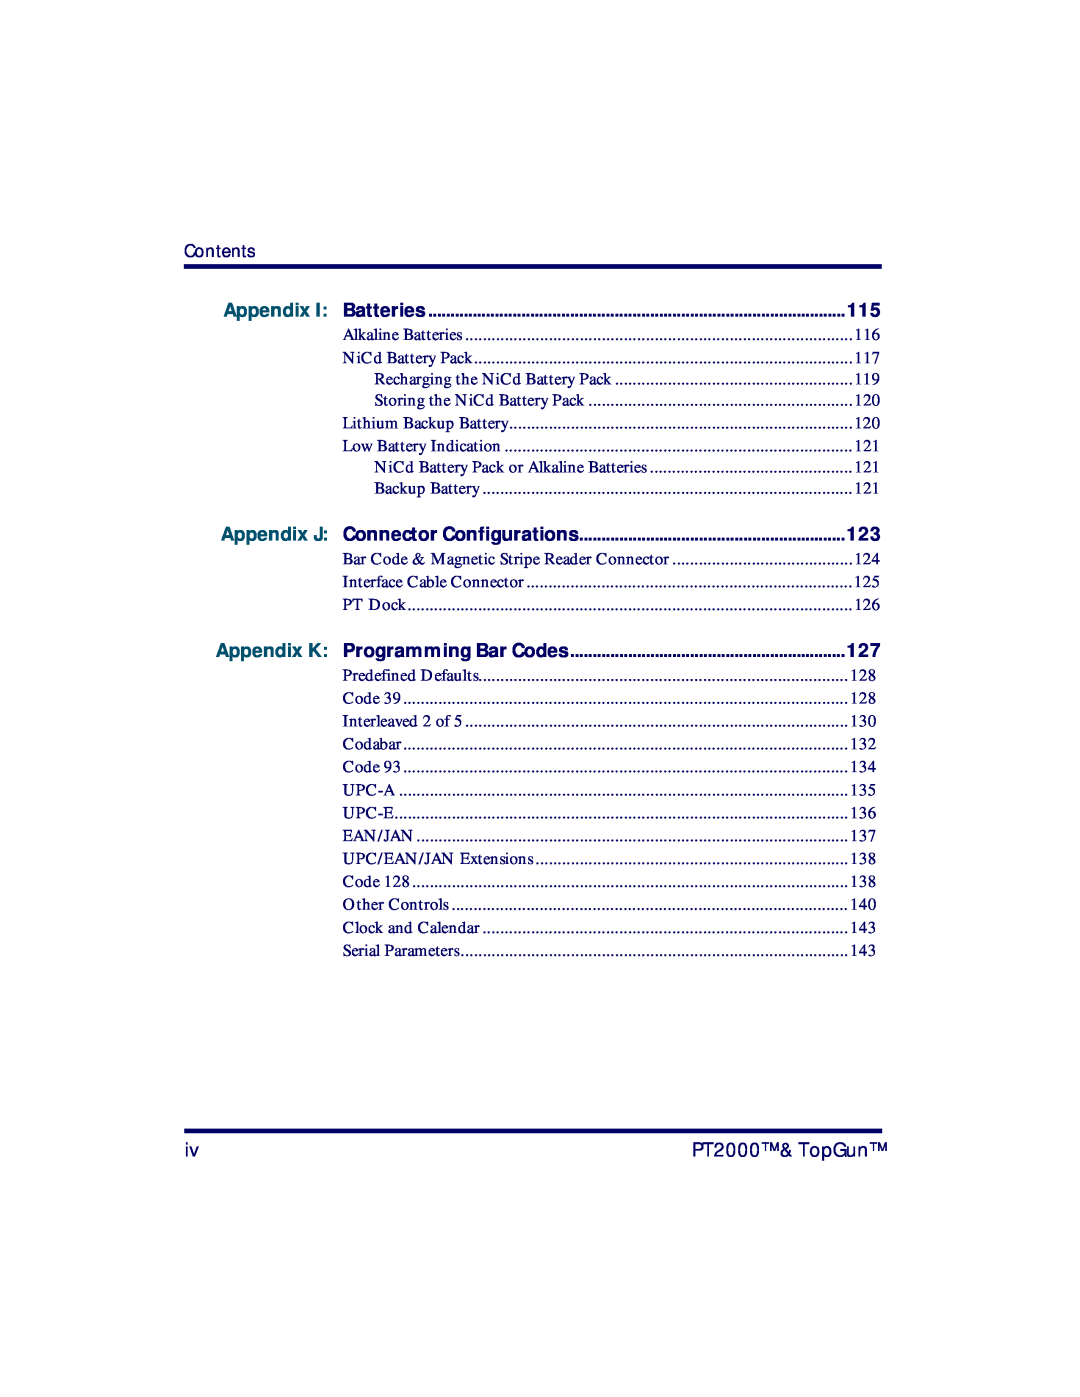 PSC manual Appendix J, Contents, Appendix K Programming Bar Codes, PT2000 & TopGun 